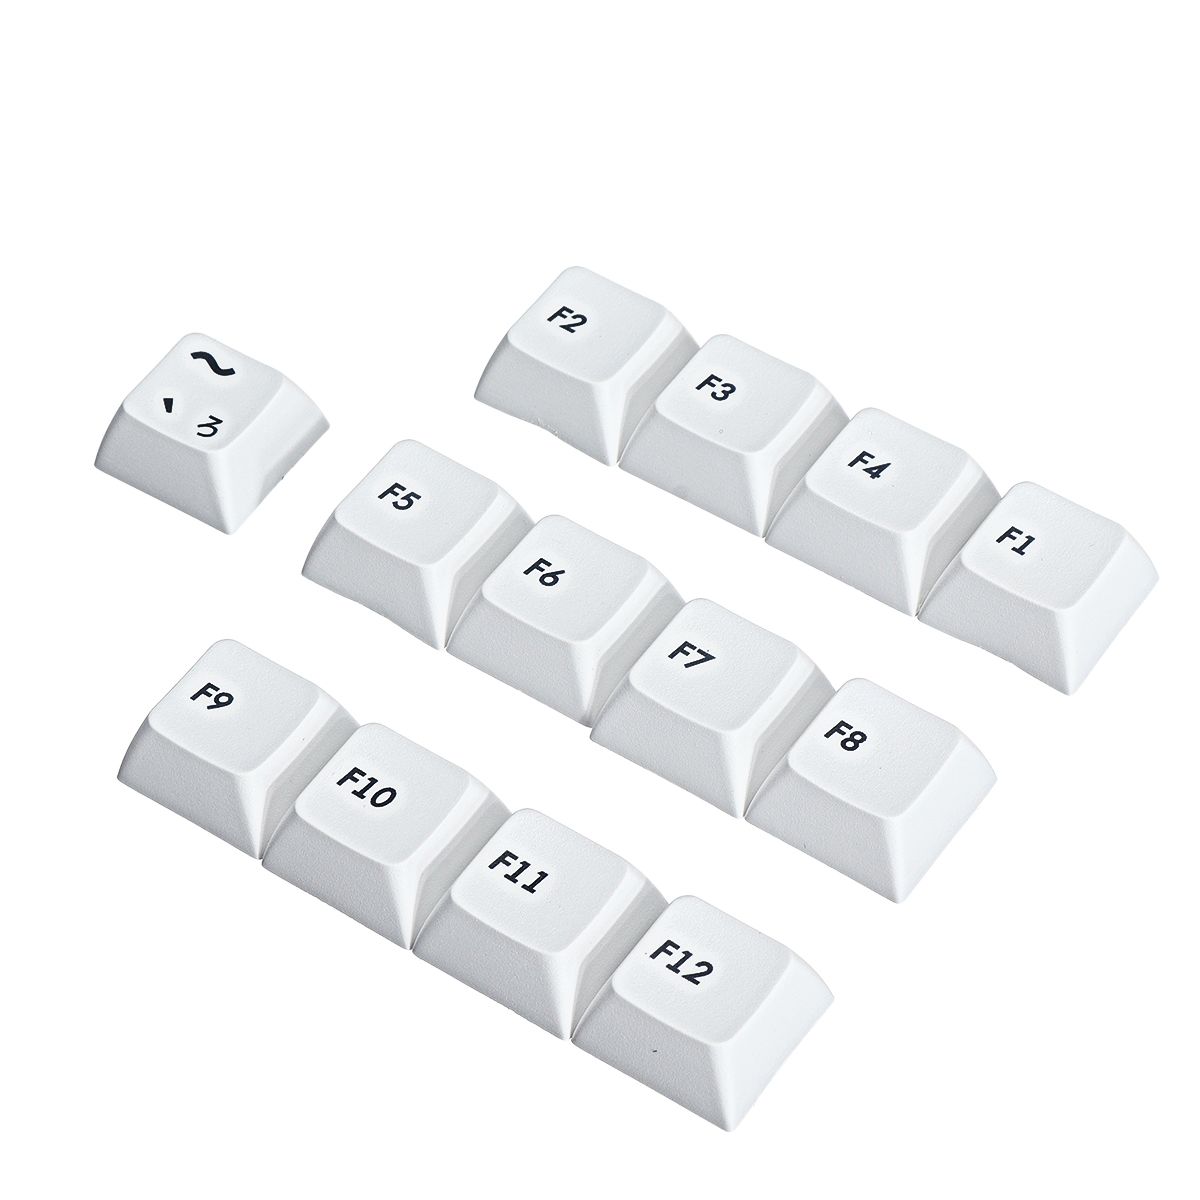 119-Keys-Black--White-Keycap-Set-XDA-Profile-PBT-Sublimation-Japanese-Keycaps-for-Mechanical-Keyboar-1737572